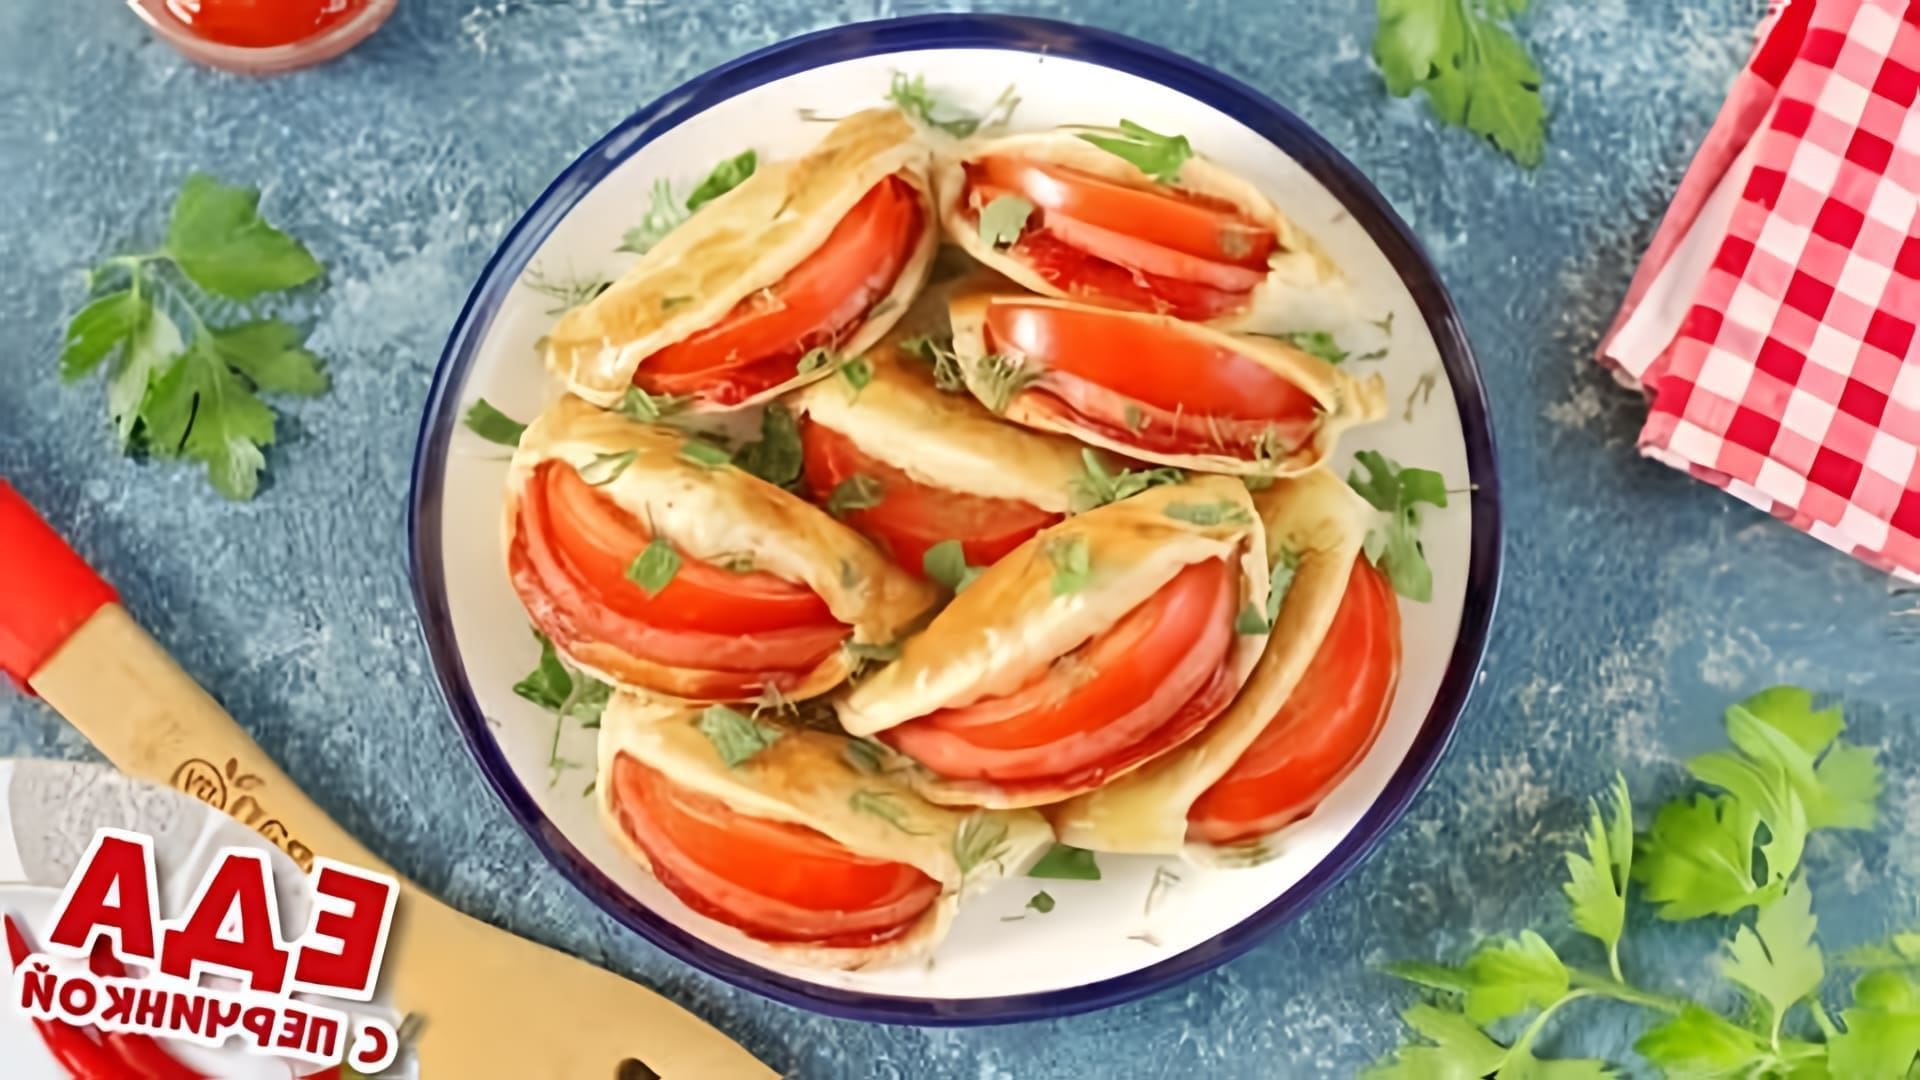 В этом видео демонстрируется рецепт приготовления ушек с колбасой и помидорами